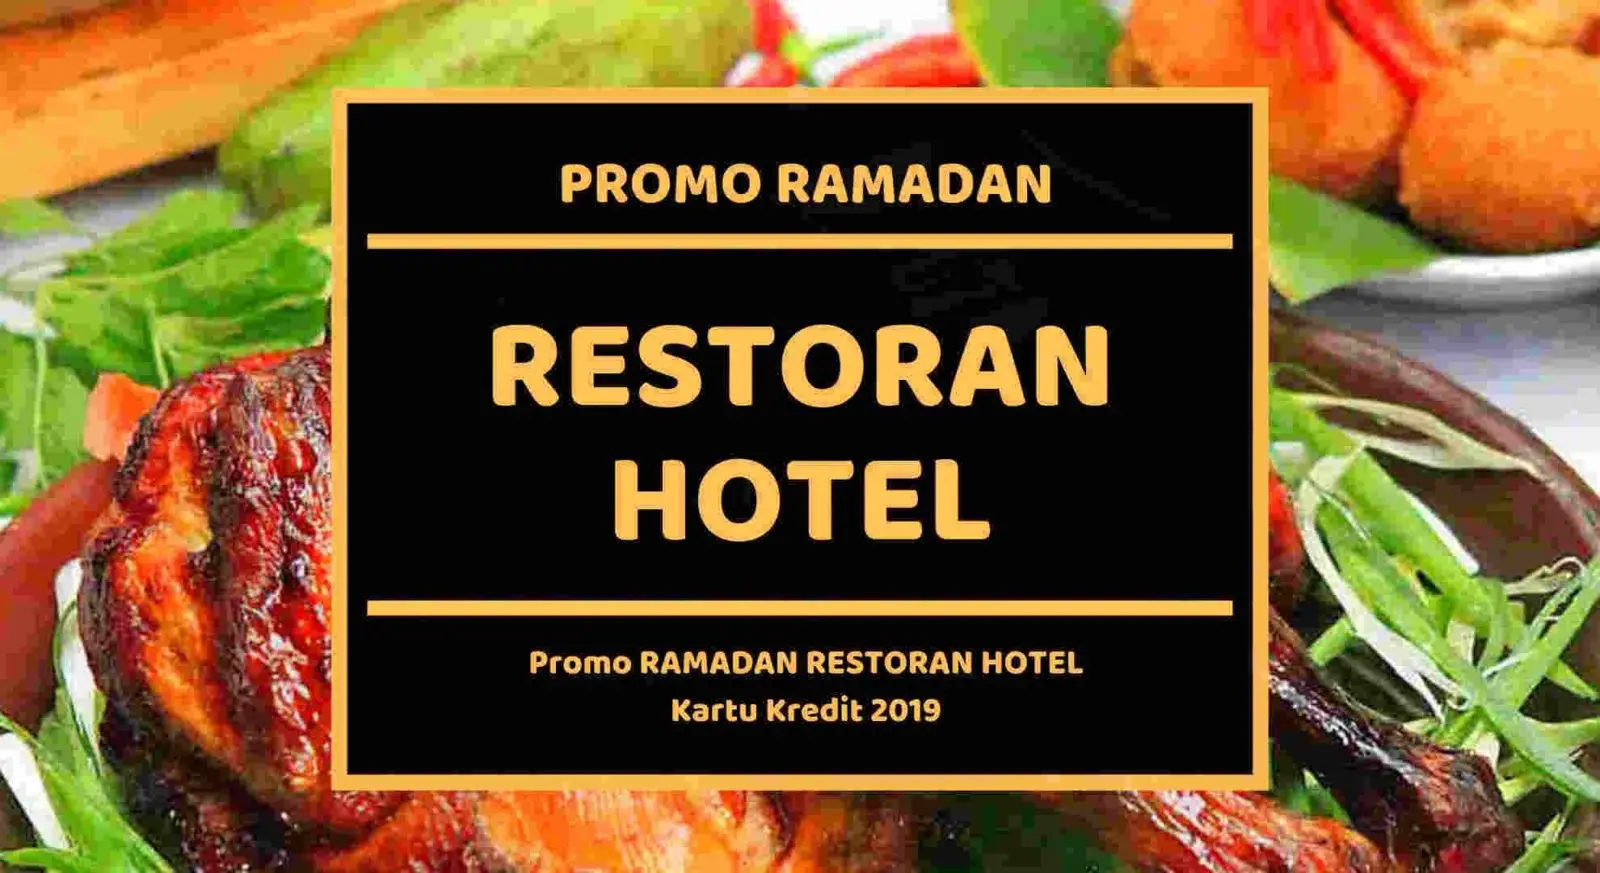 Promo Ramadan Restoran Hotel